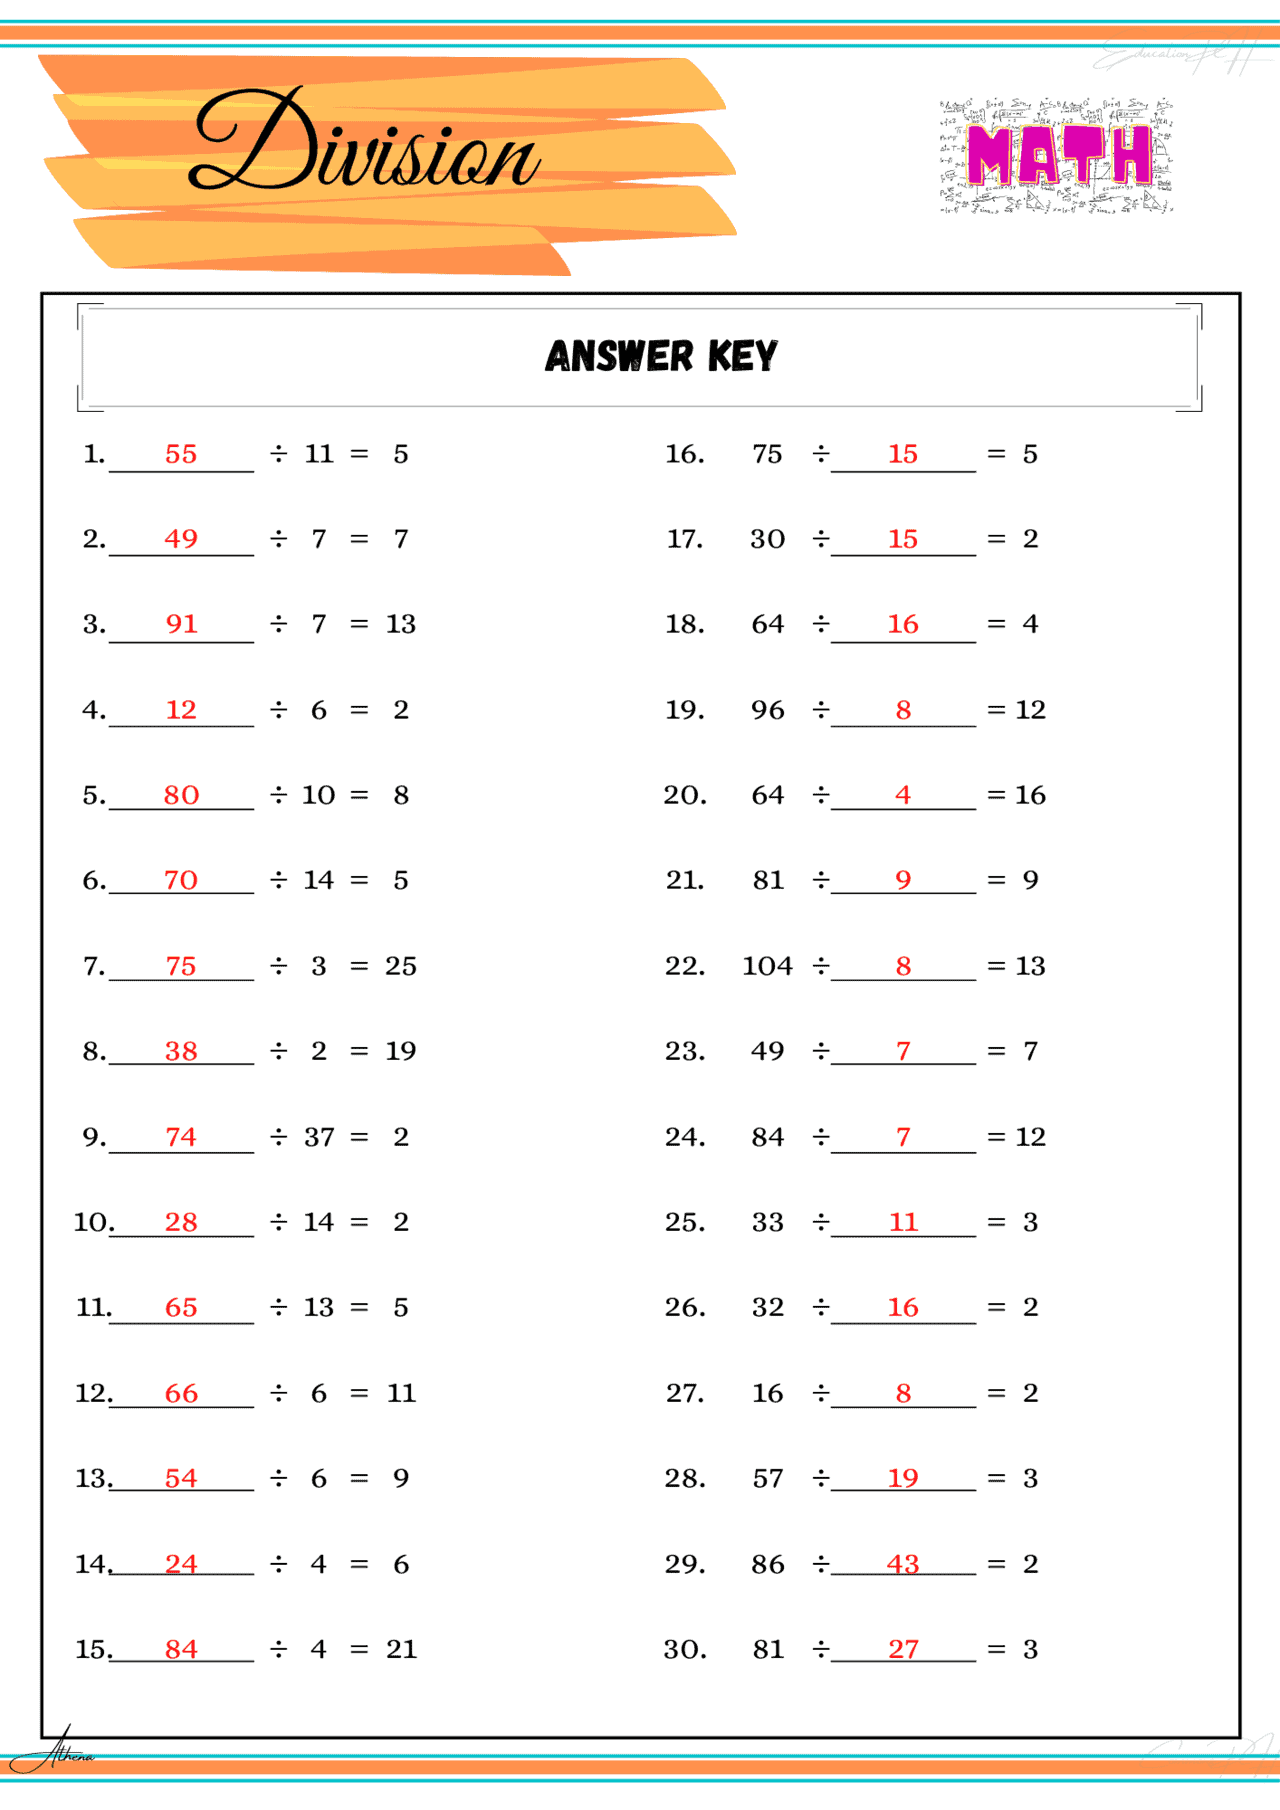 number-1-20-practice-set-2-kindergarten-math-worksheets-grade-4-math-division-i